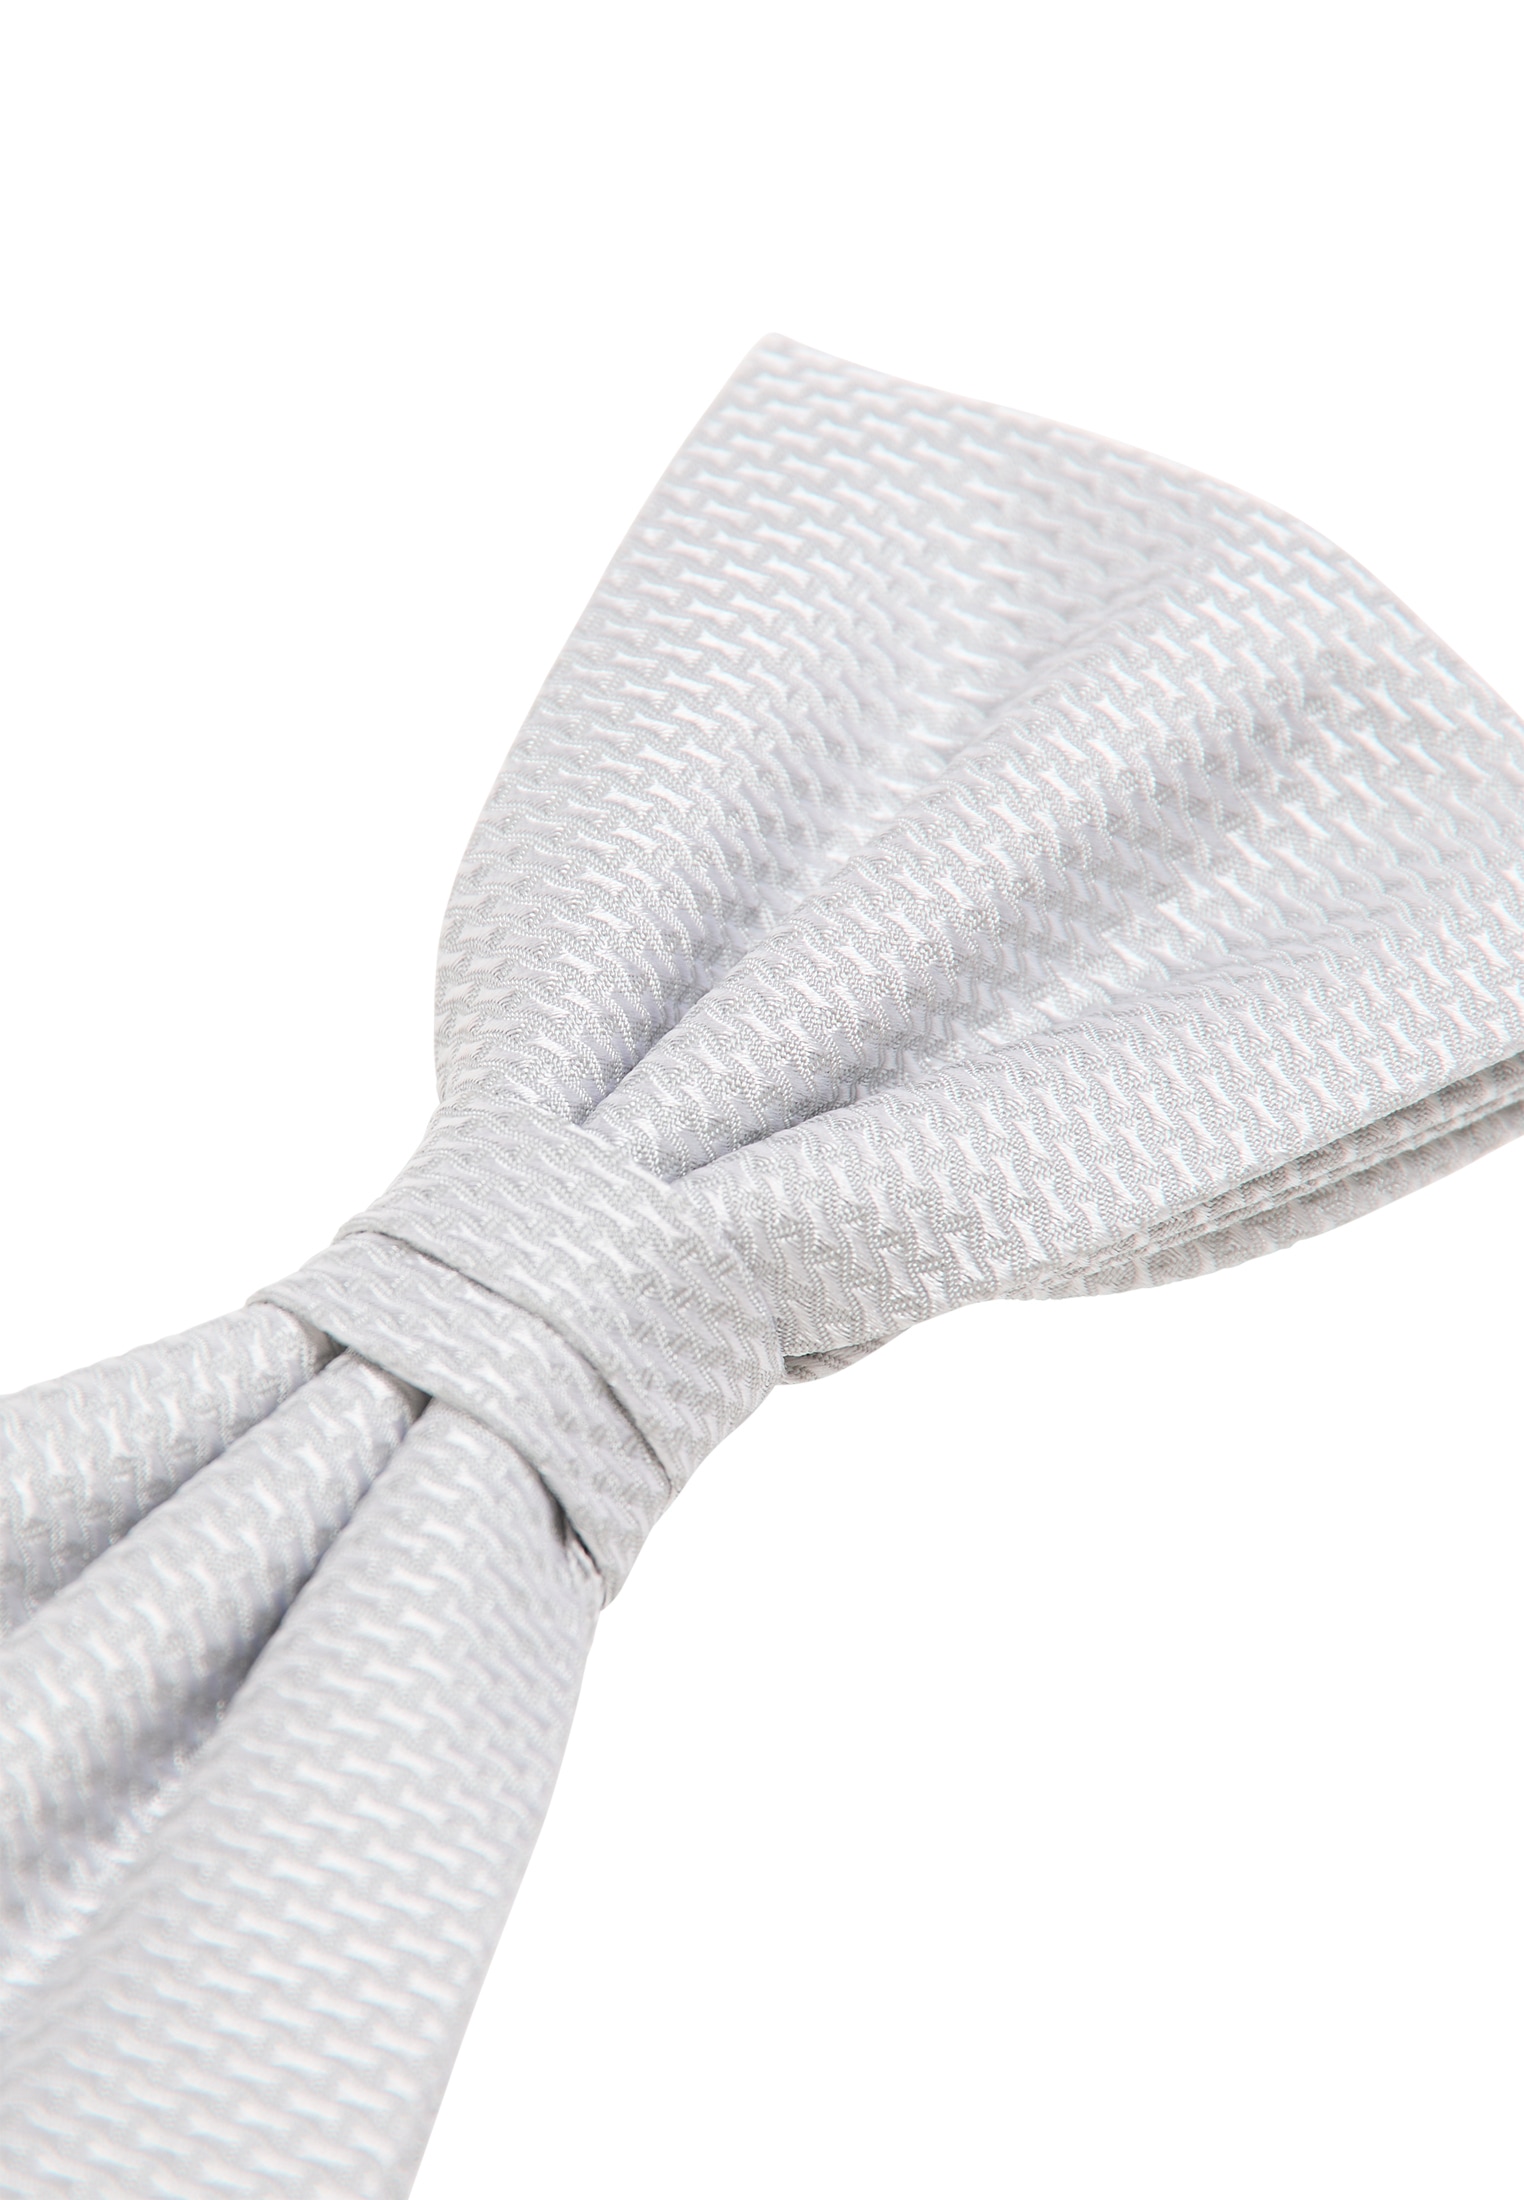 Krawatten ➤ ohne kaufen Mindestbestellwert